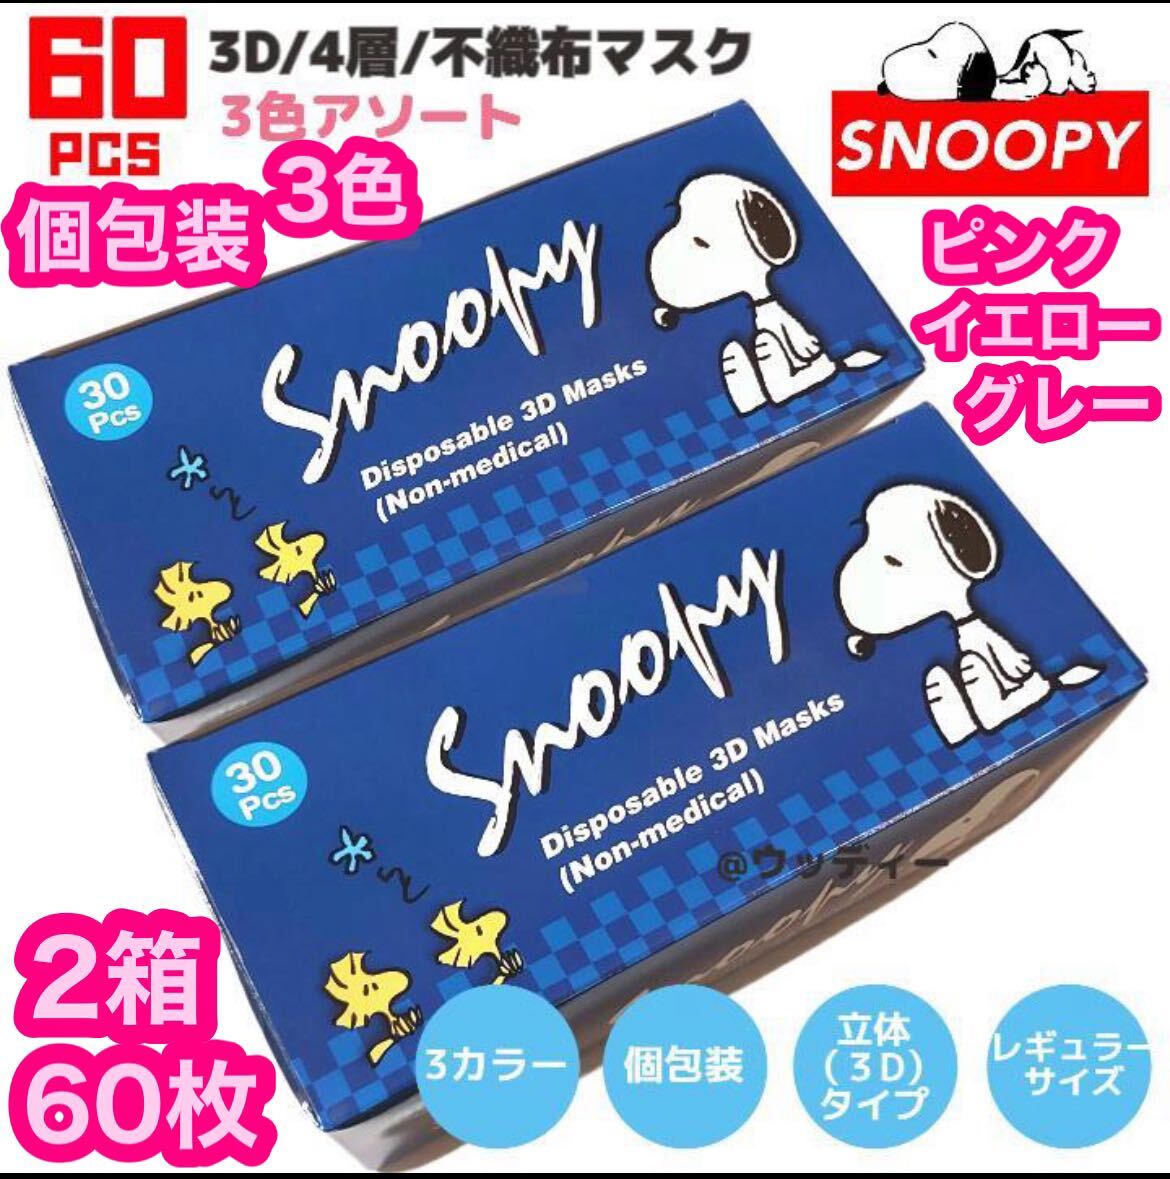 SNOOPY Snoopy 3D4 слой нетканый материал маска 2 коробка 60 листов шт упаковка нетканый материал постоянный маска цельный 3 цвет mask 3 цвет бриллиант цельный 4 слой гигиенические товары 